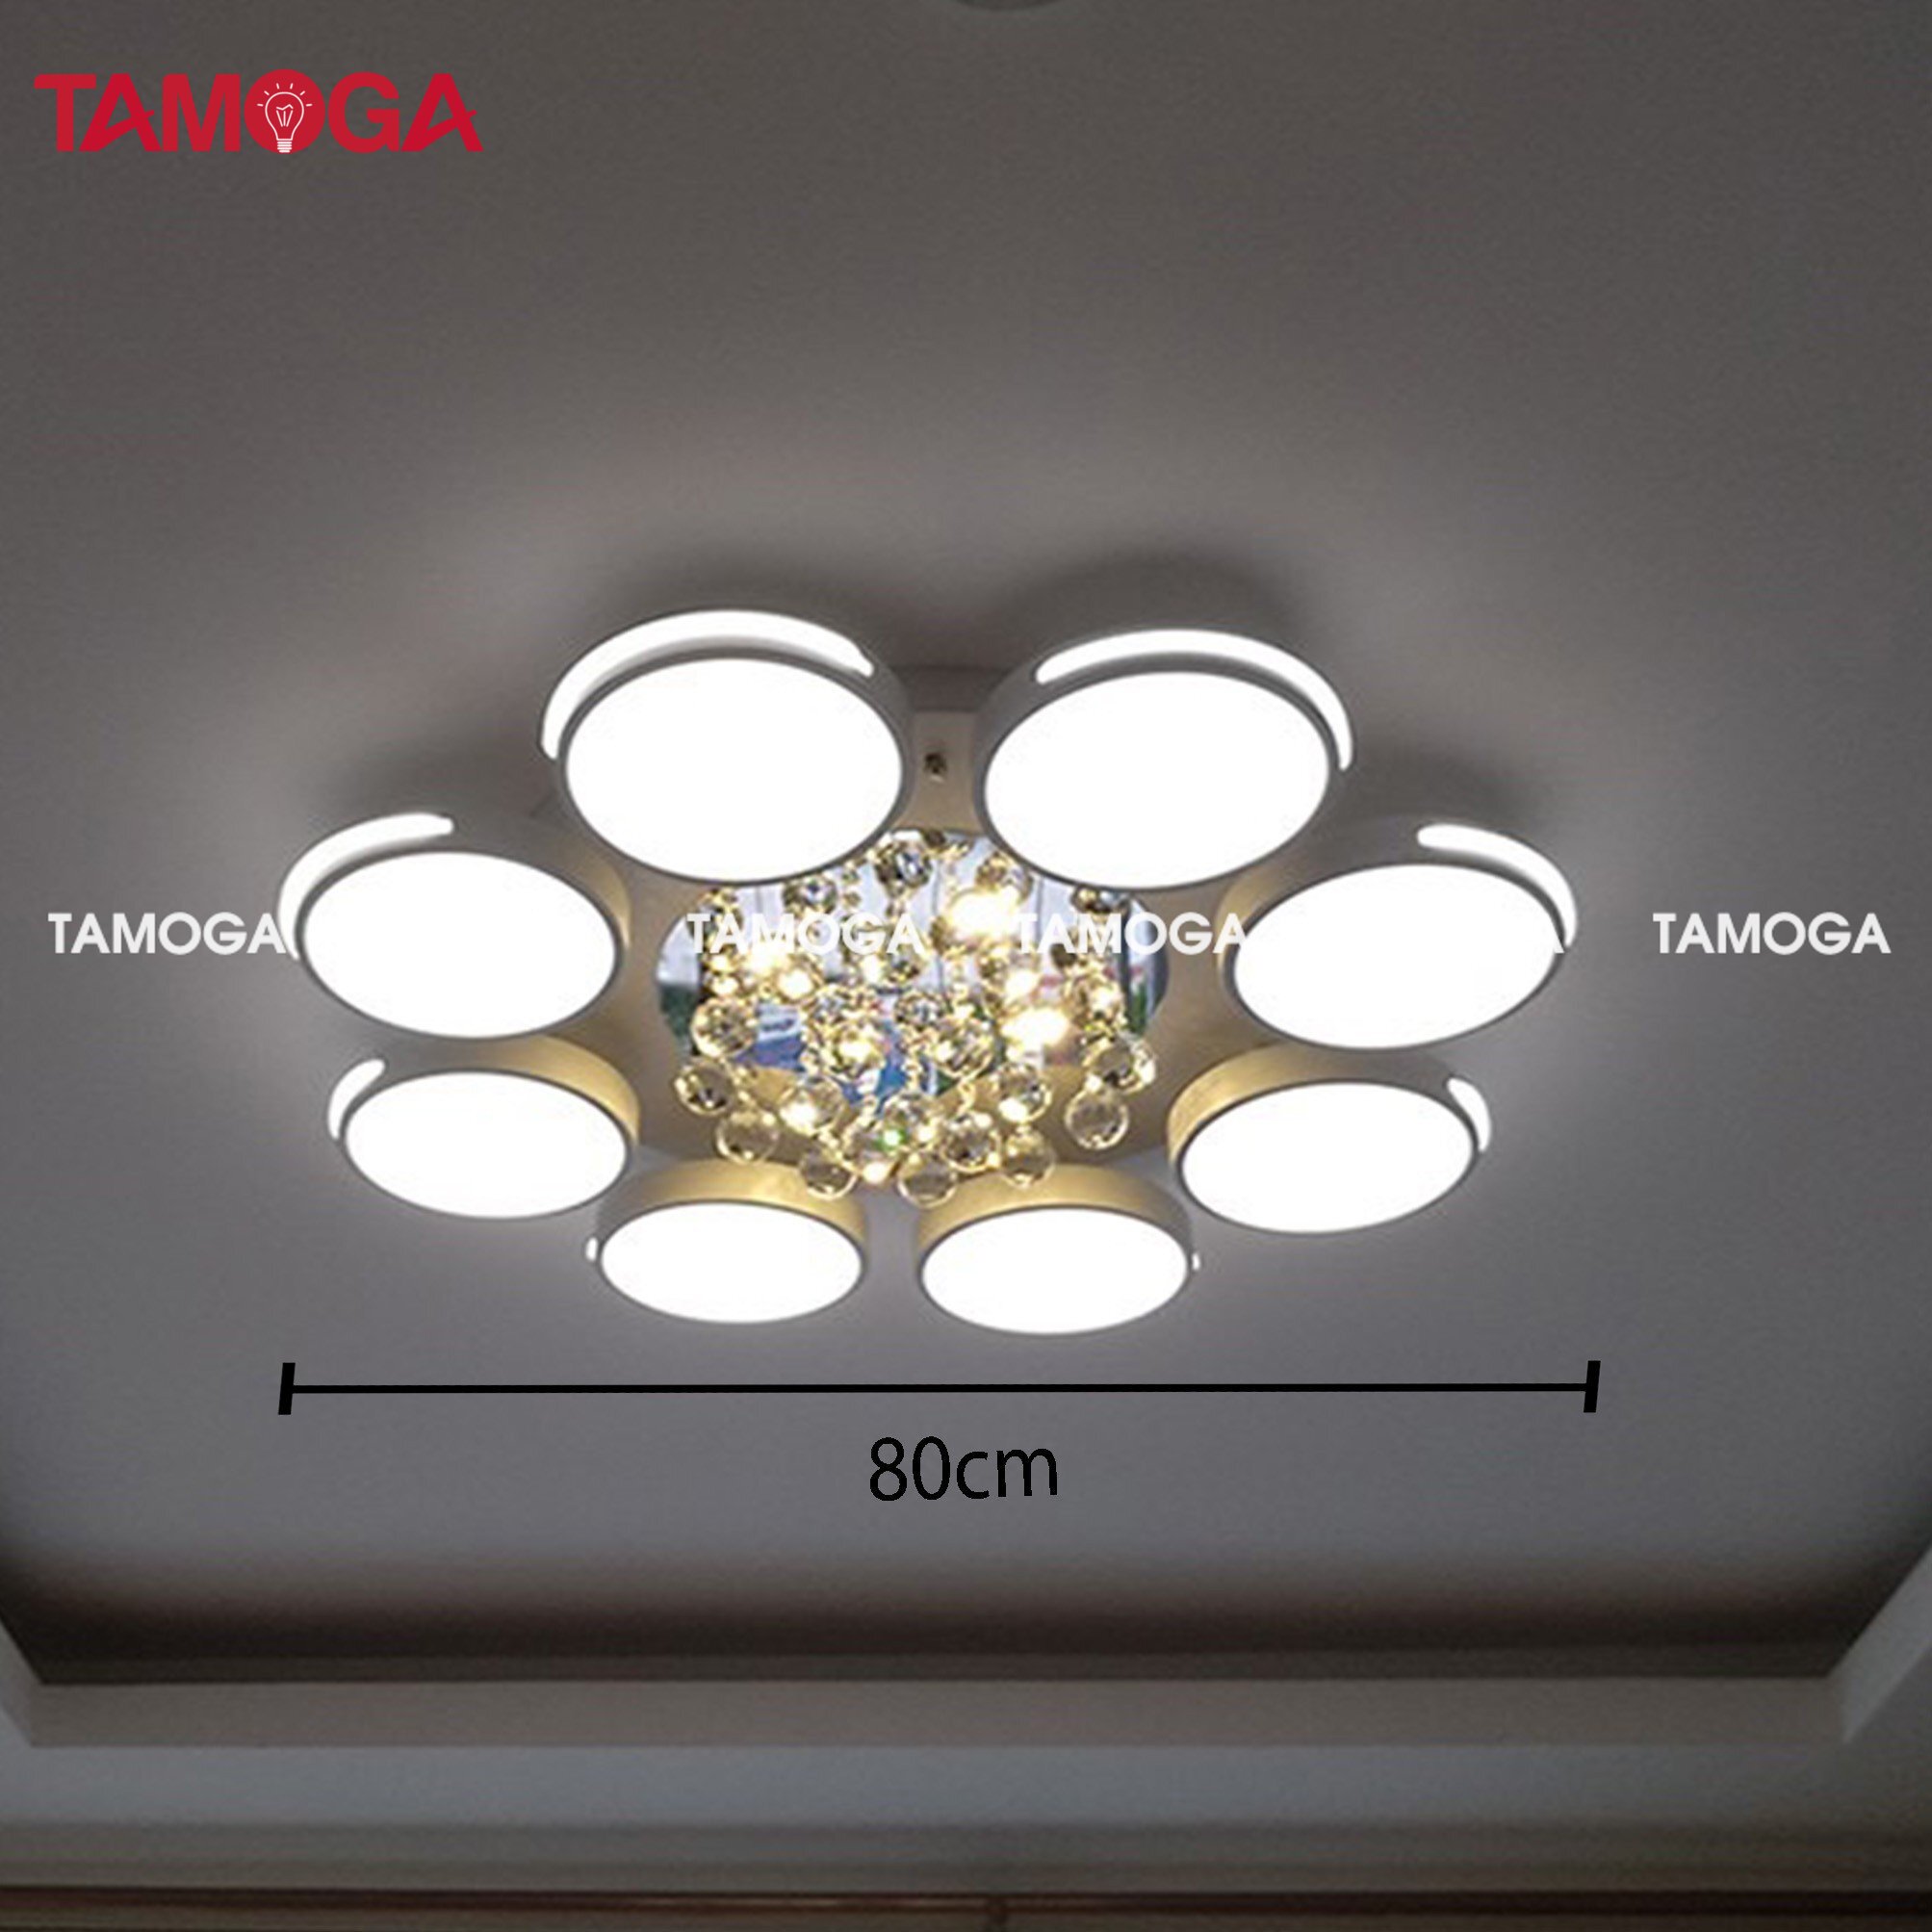 Đèn ốp trần phòng khách pha lê 8 cánh TAMOGA CASIA 9065